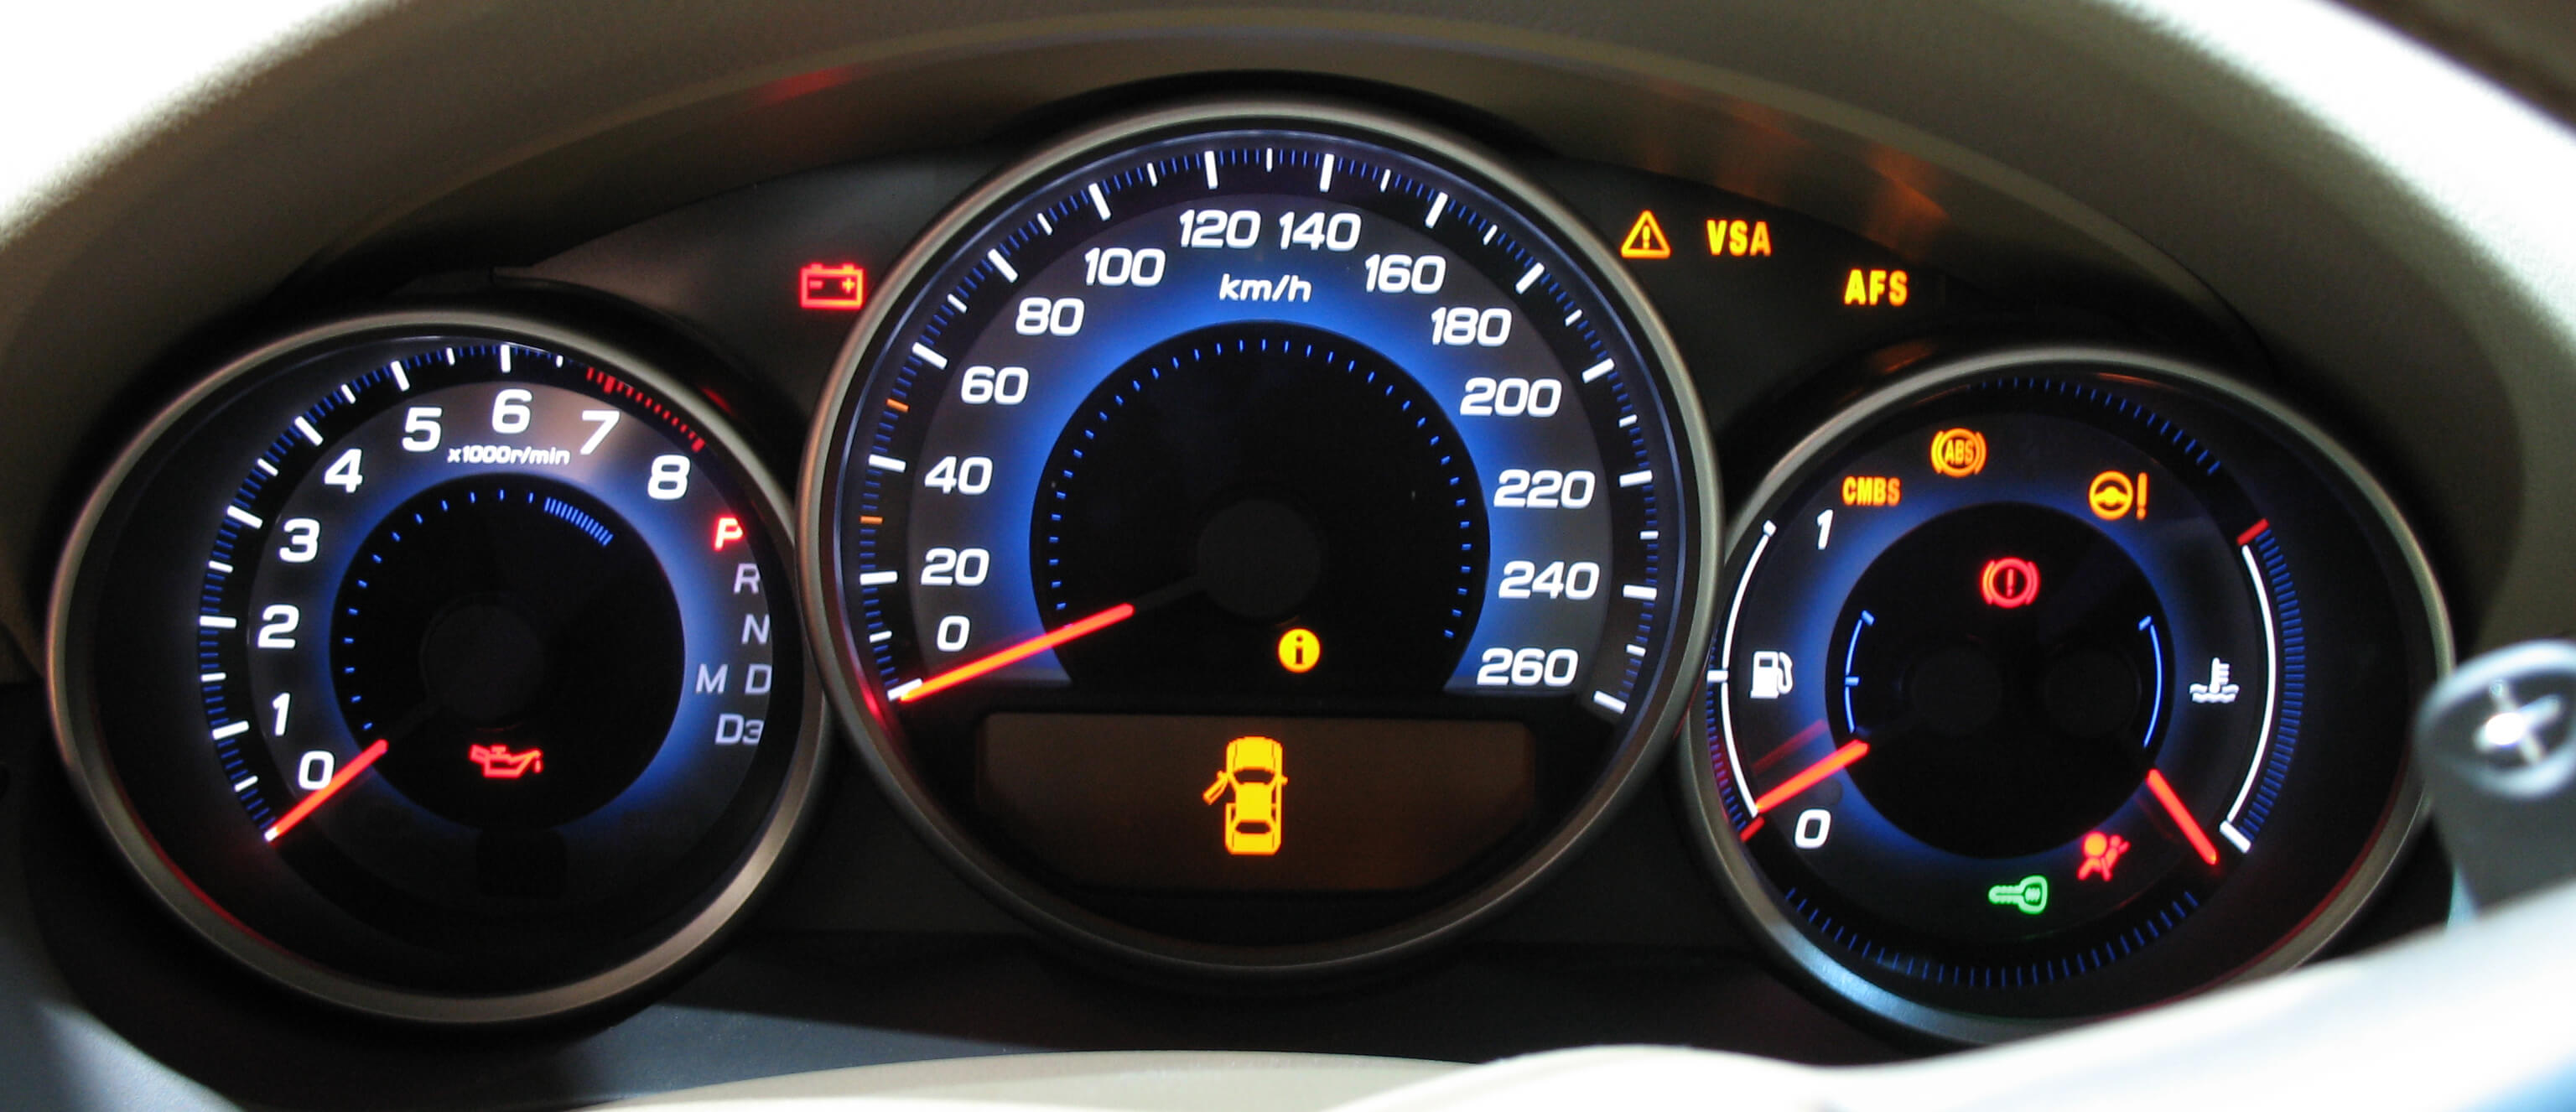 Instrument cluster Como funciona o sensor de temperatura do seu carro?